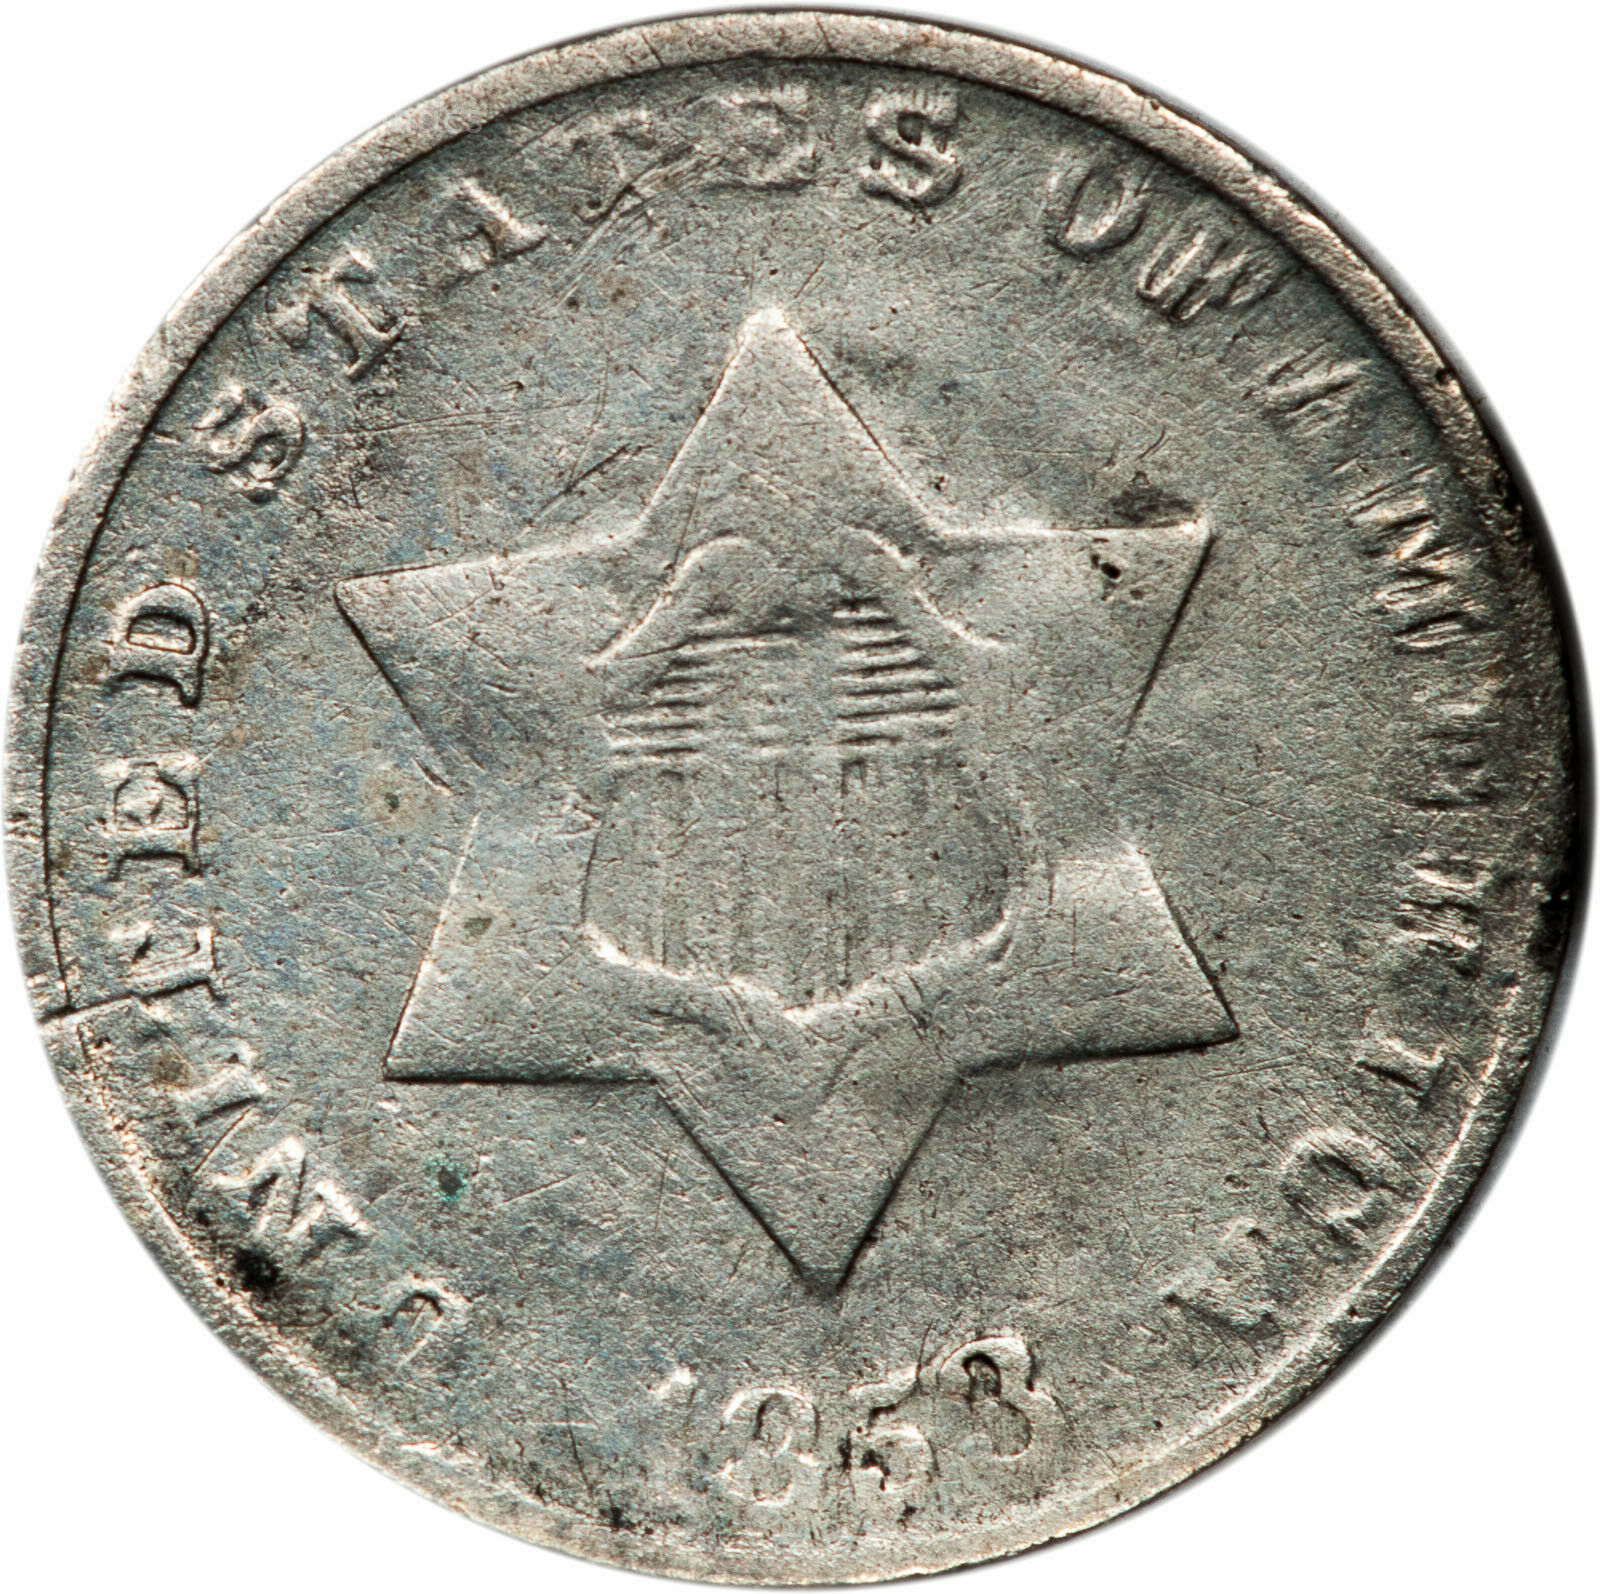 1853 Three Cent Silver - Vf - Very Fine (3667.q1567)